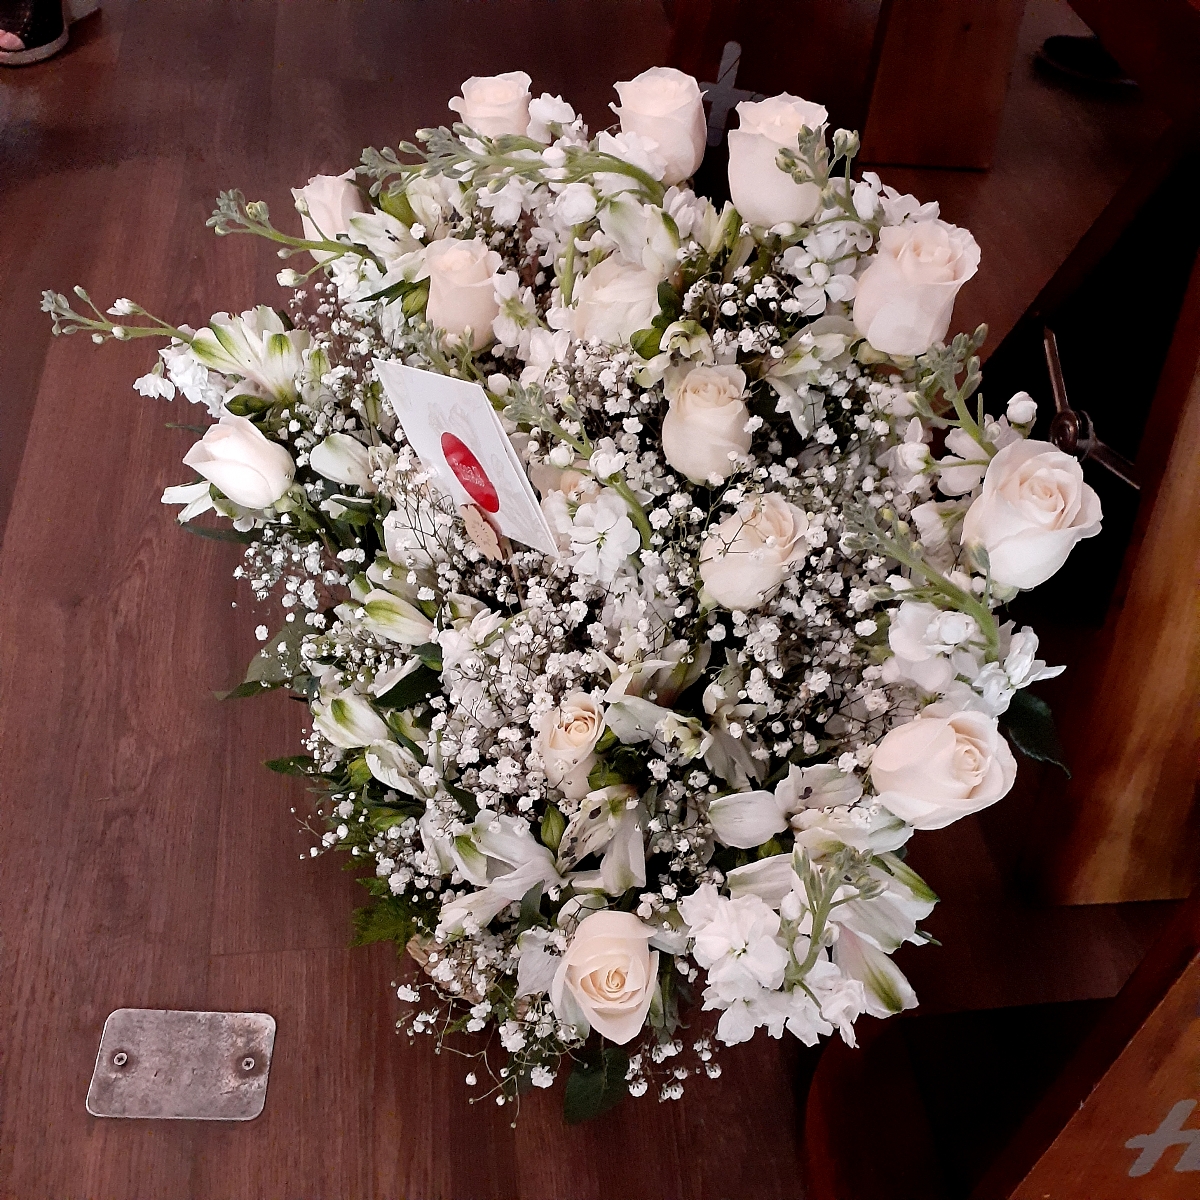 Pésame - Arreglo floral de condolencias con rosas y mix de flores blancas de temporaada - Pedido 248829